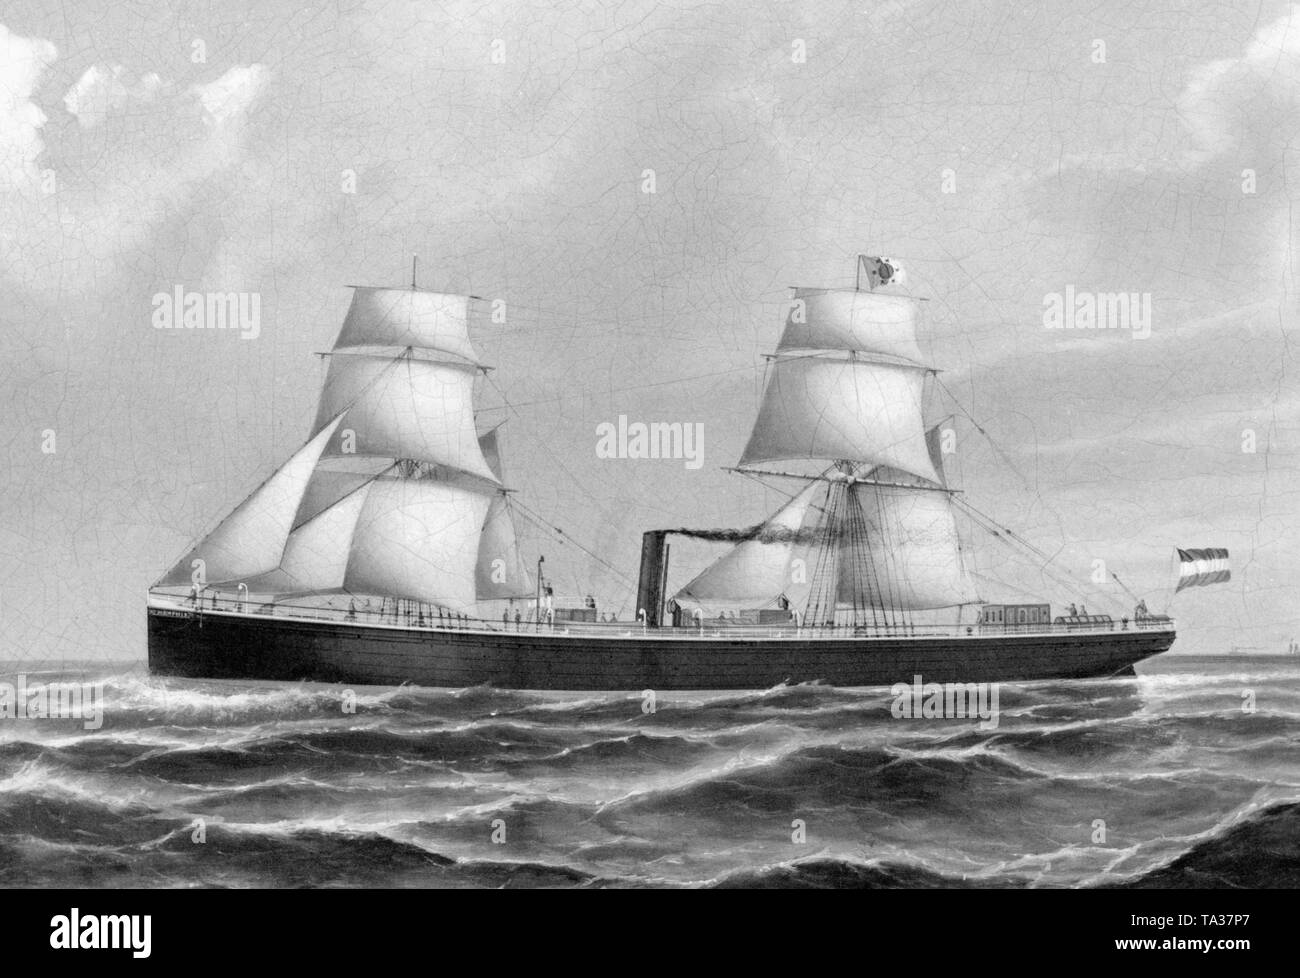 El 'Memphis' de la naviera DDG Kosmos en el mar. Entre 1873 a 1891, el buque estuvo en servicio de la DDG y fue desguazada en 1921. Foto de stock